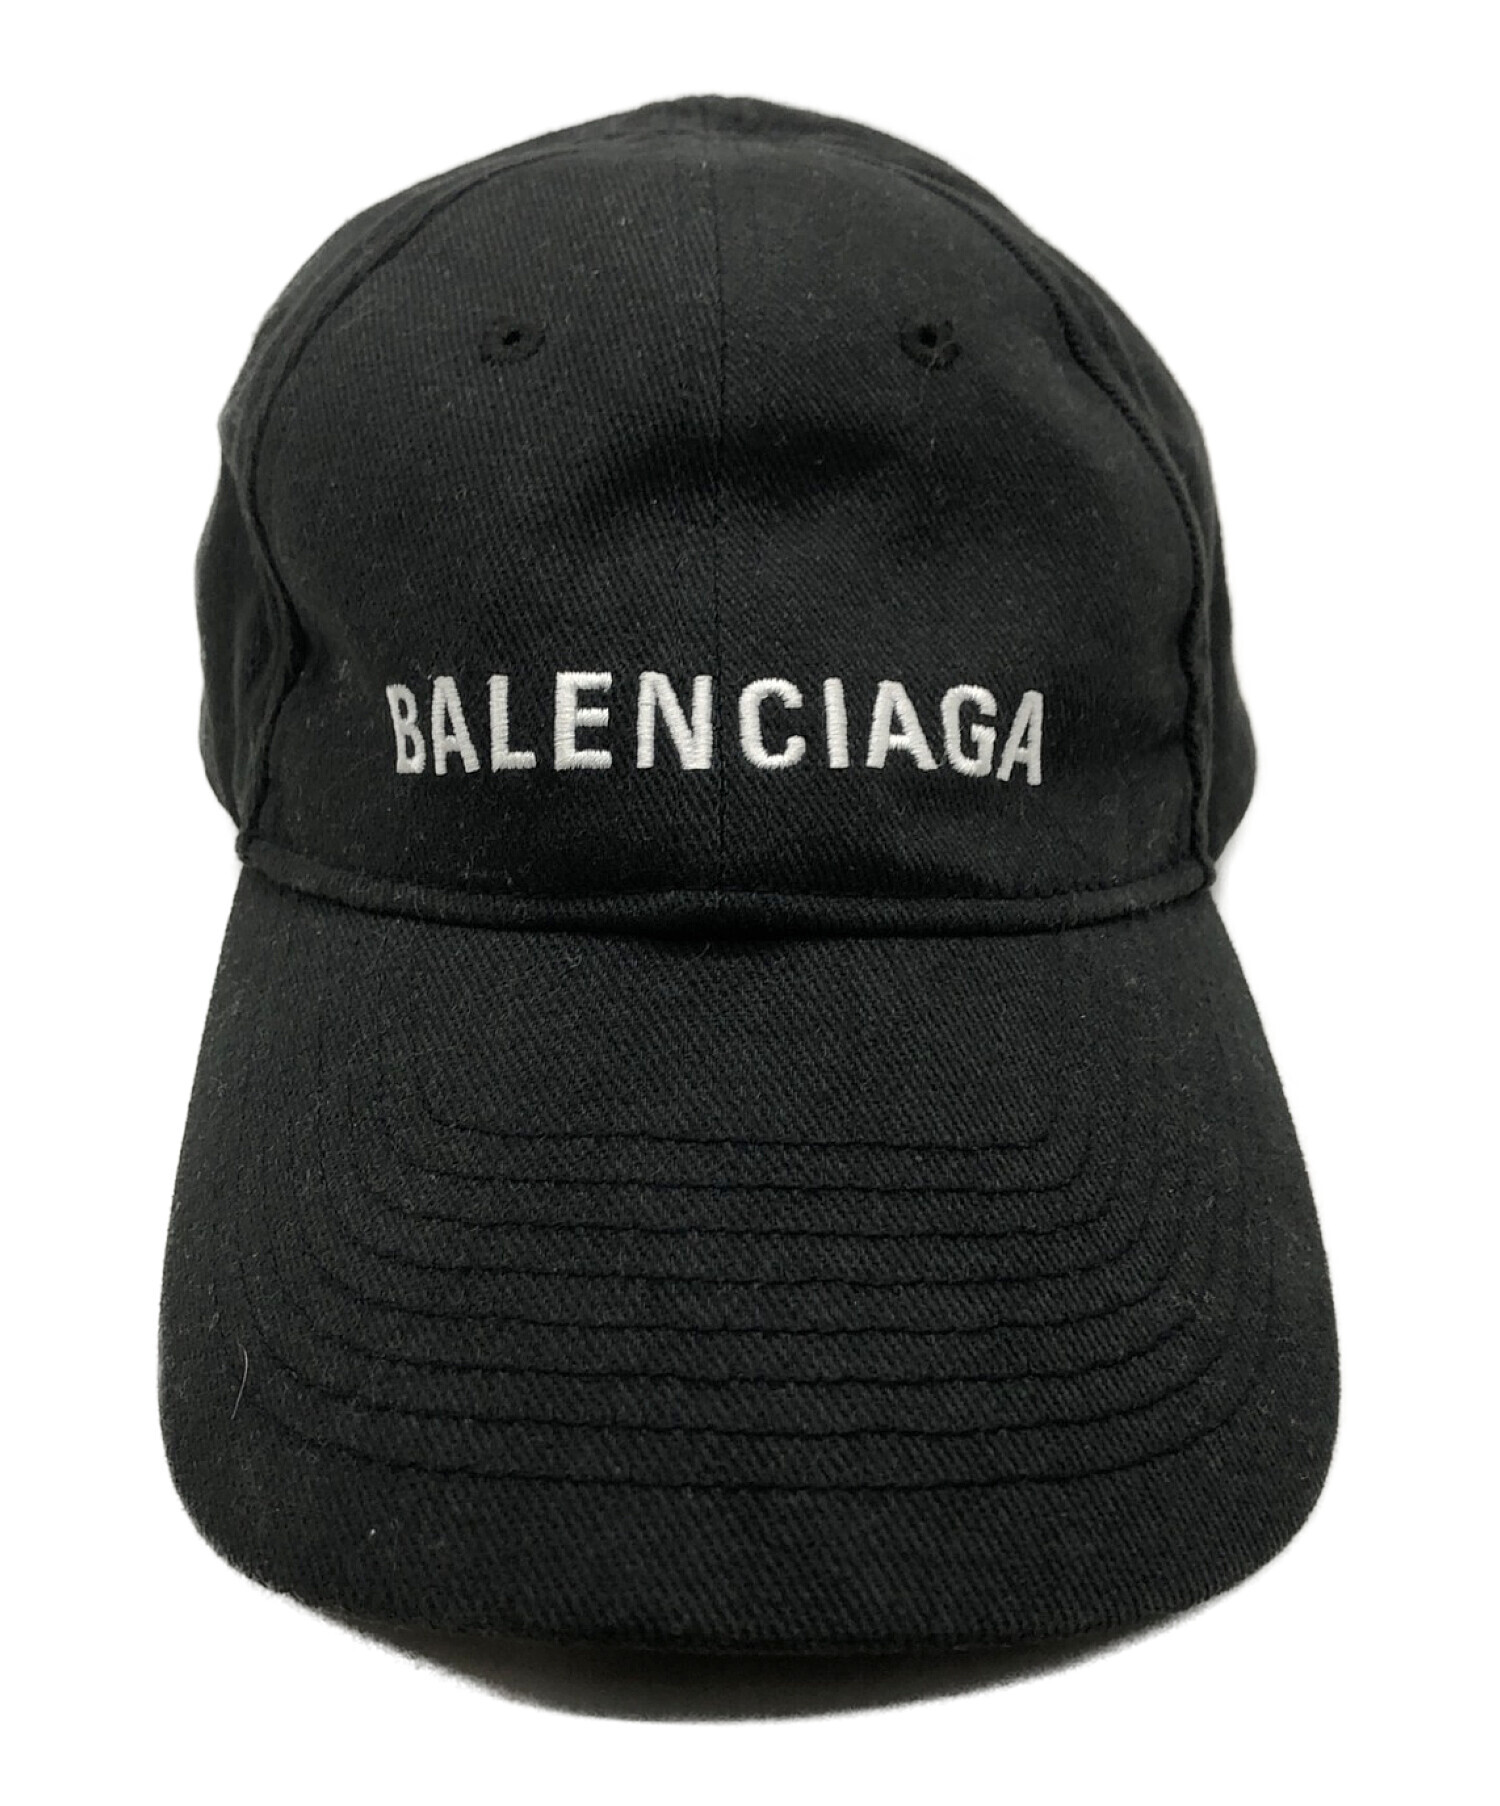 【日本特販】BALENCIAGA クラシックベースボールキャップ L59 帽子